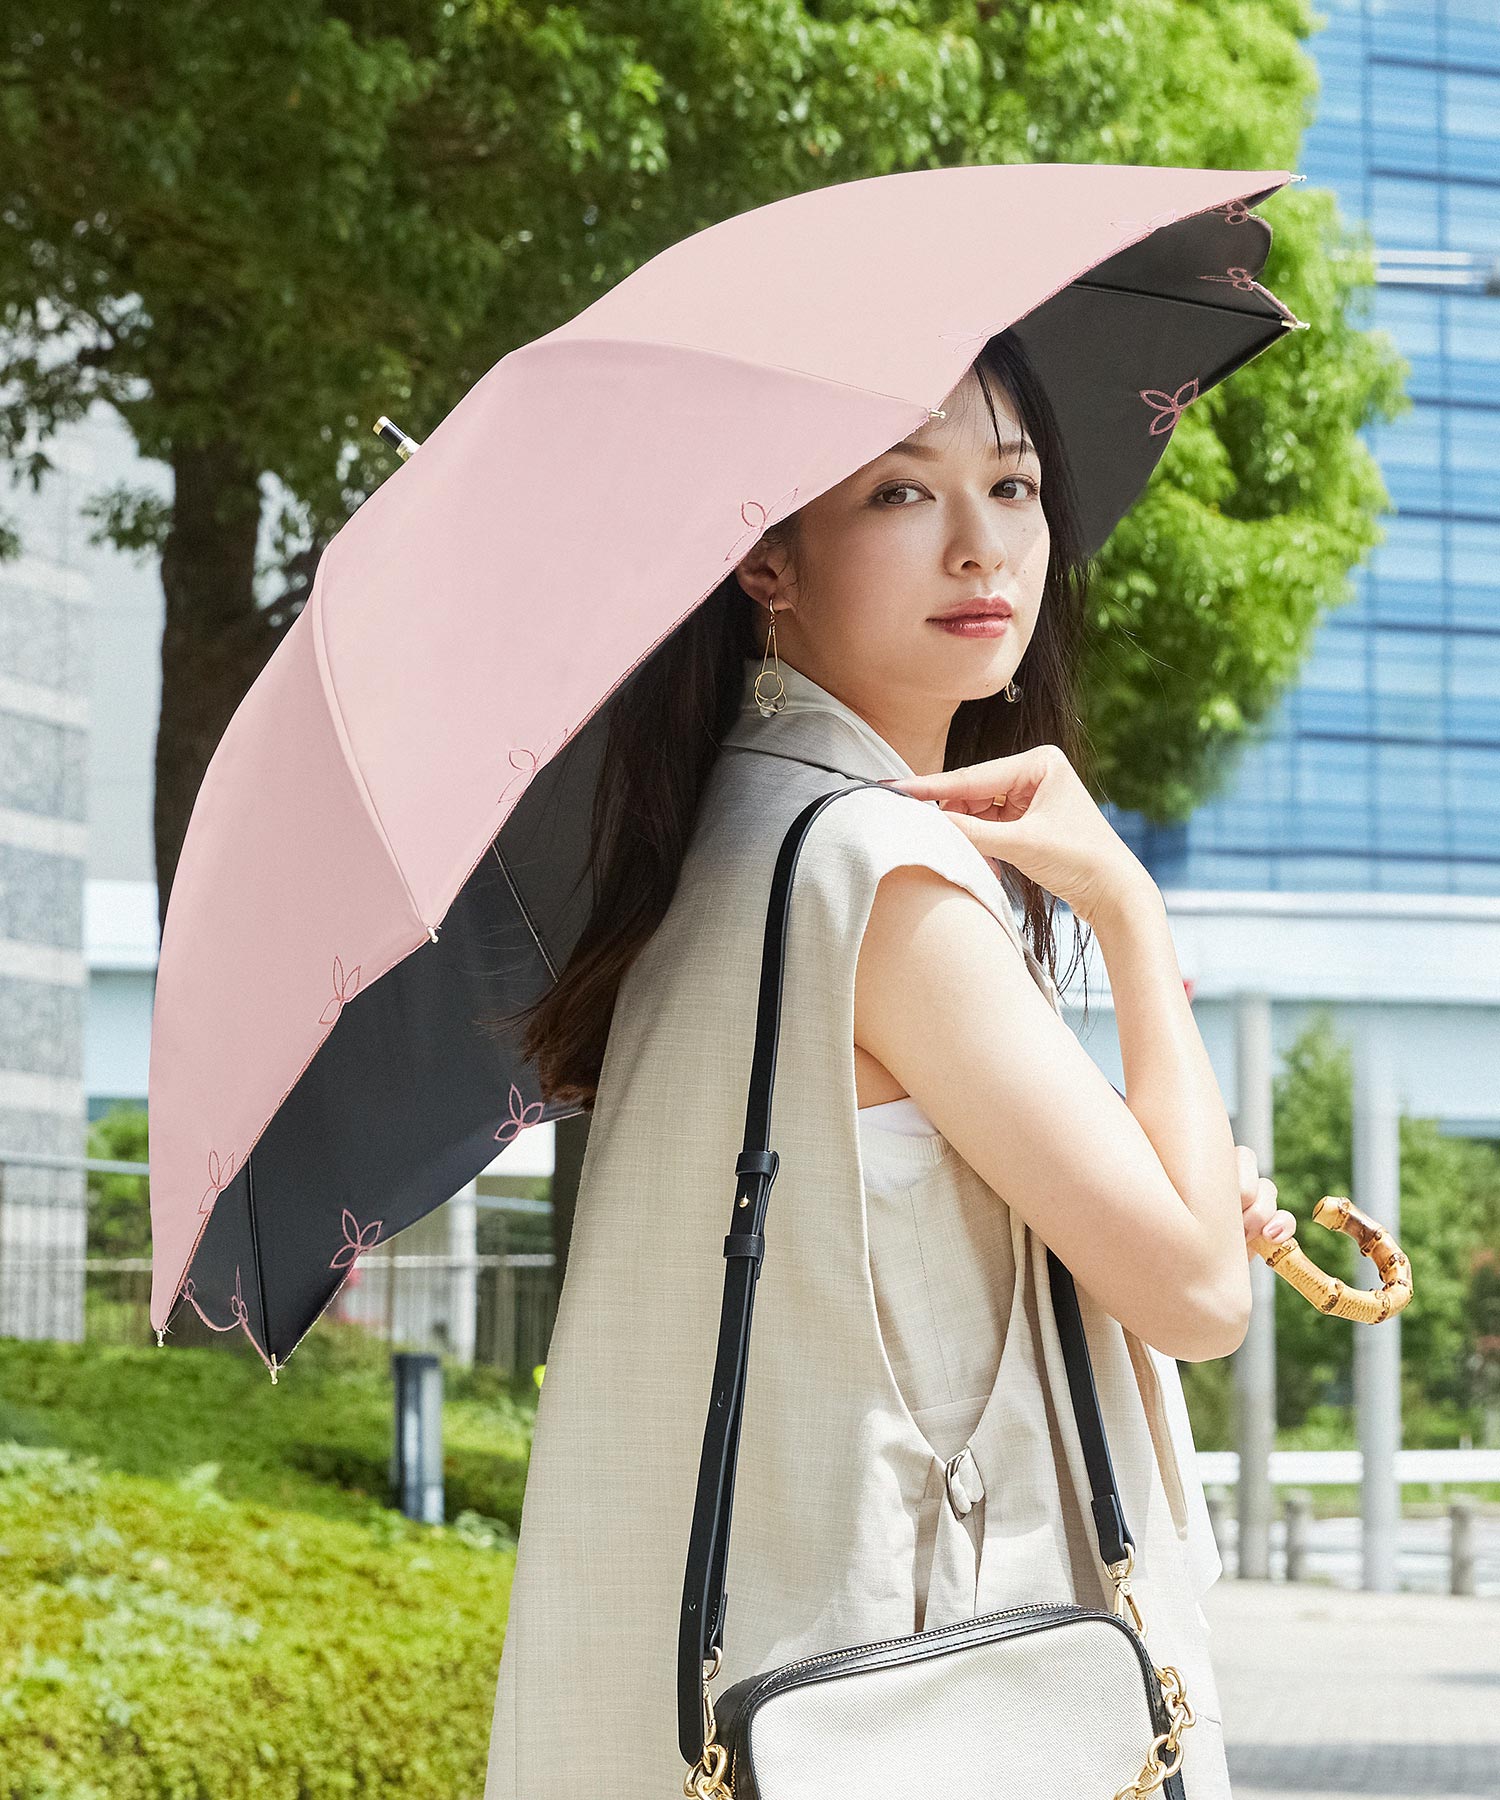 日傘 晴雨兼用 女優日傘 長日傘 刺繍 完全遮光 遮熱 UVカット かわず